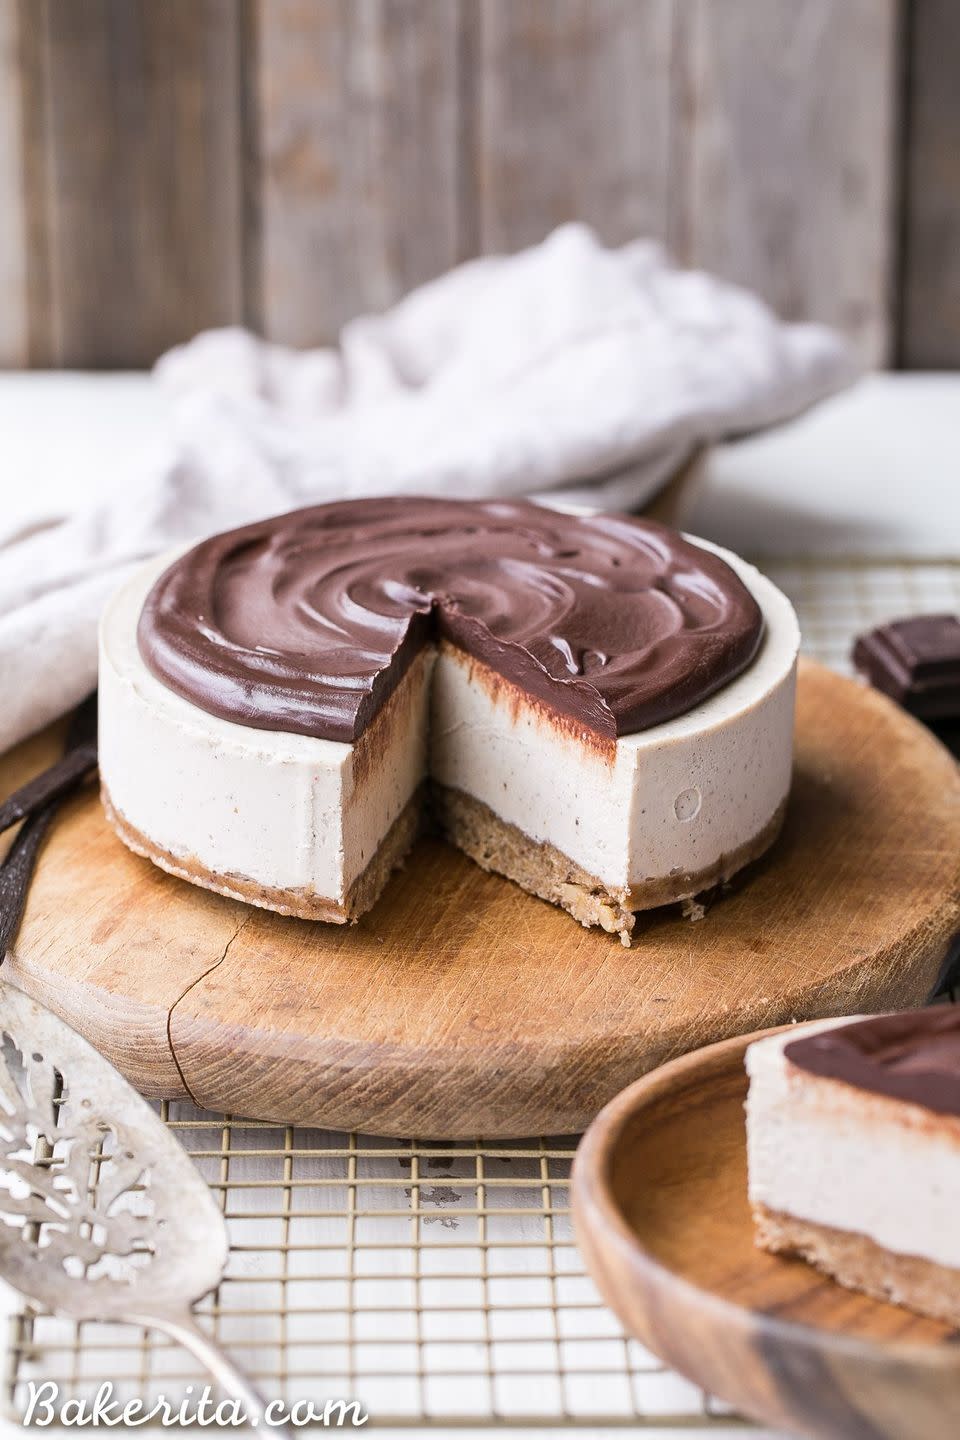 No-Bake Vanilla Bean Cheesecake with Chocolate Ganache